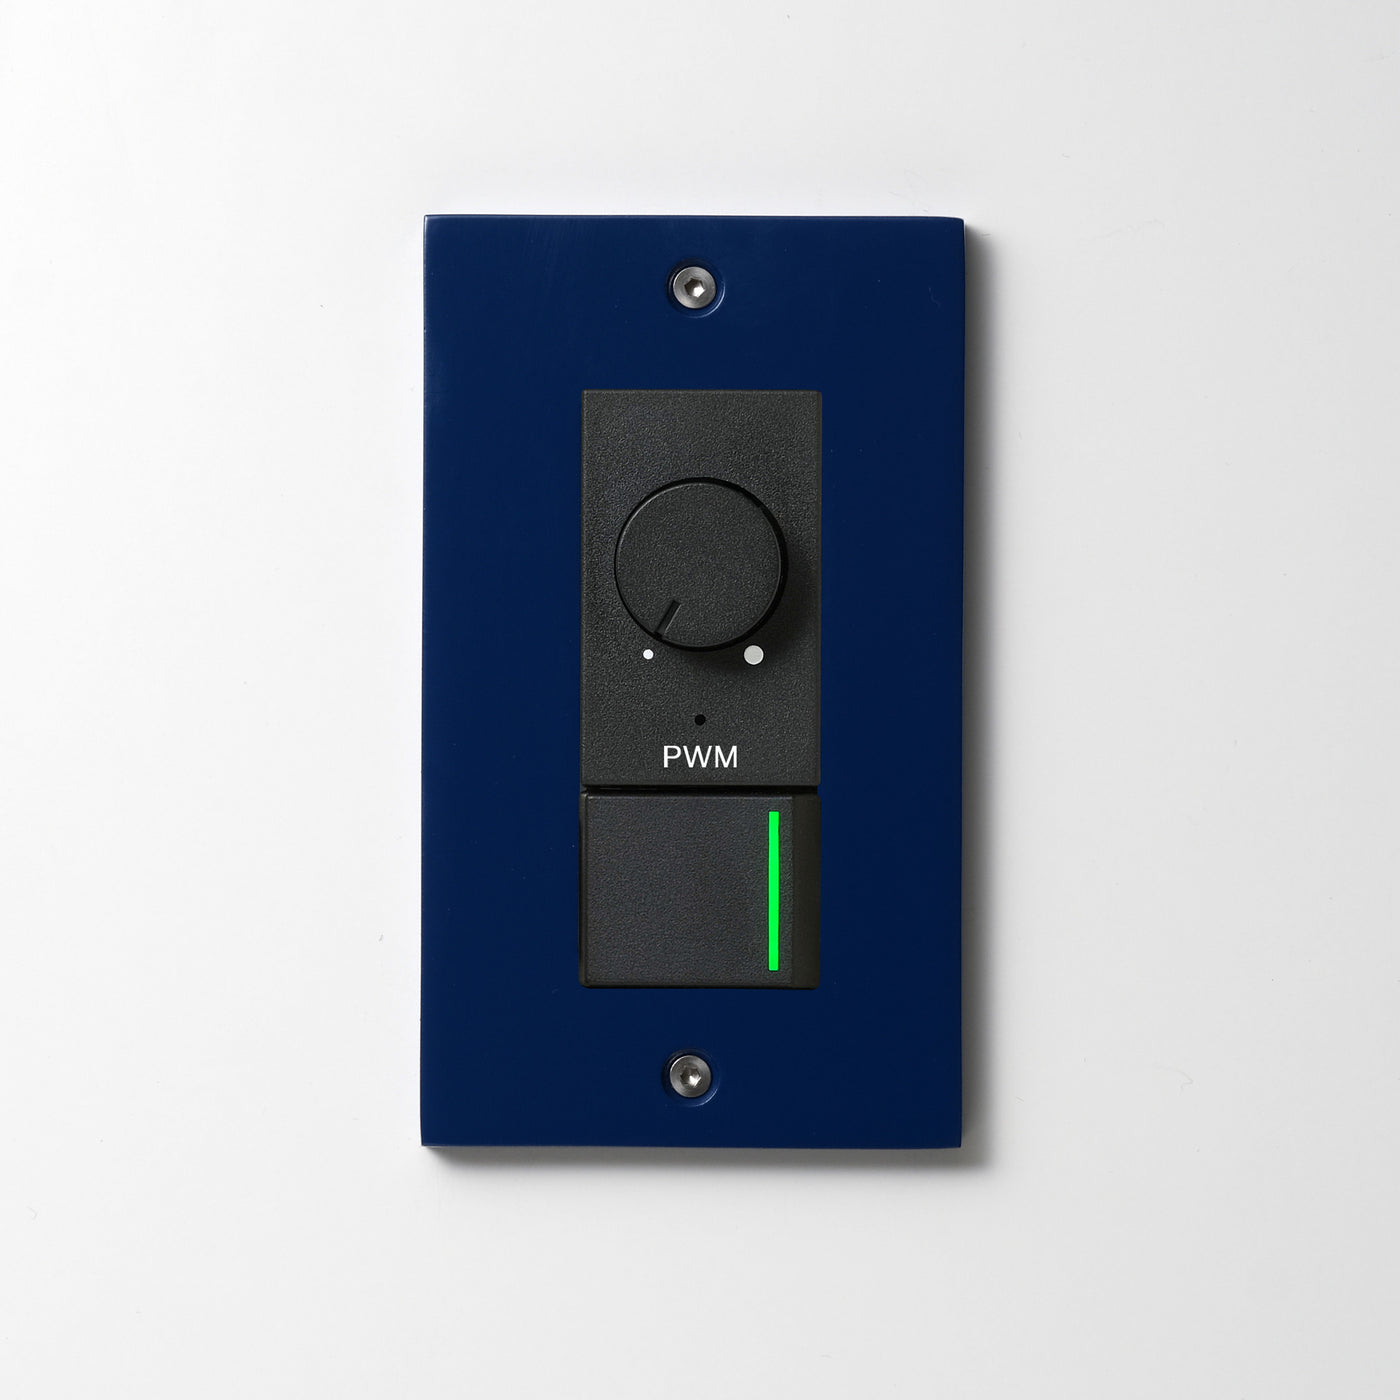 アルミダイキャスト（ブルー）プレート  <br>+ NK PWM制御方式(1ch)ライトコントロール＋片切、3路ガイドランプ（グリーン）スイッチ　 ブラック